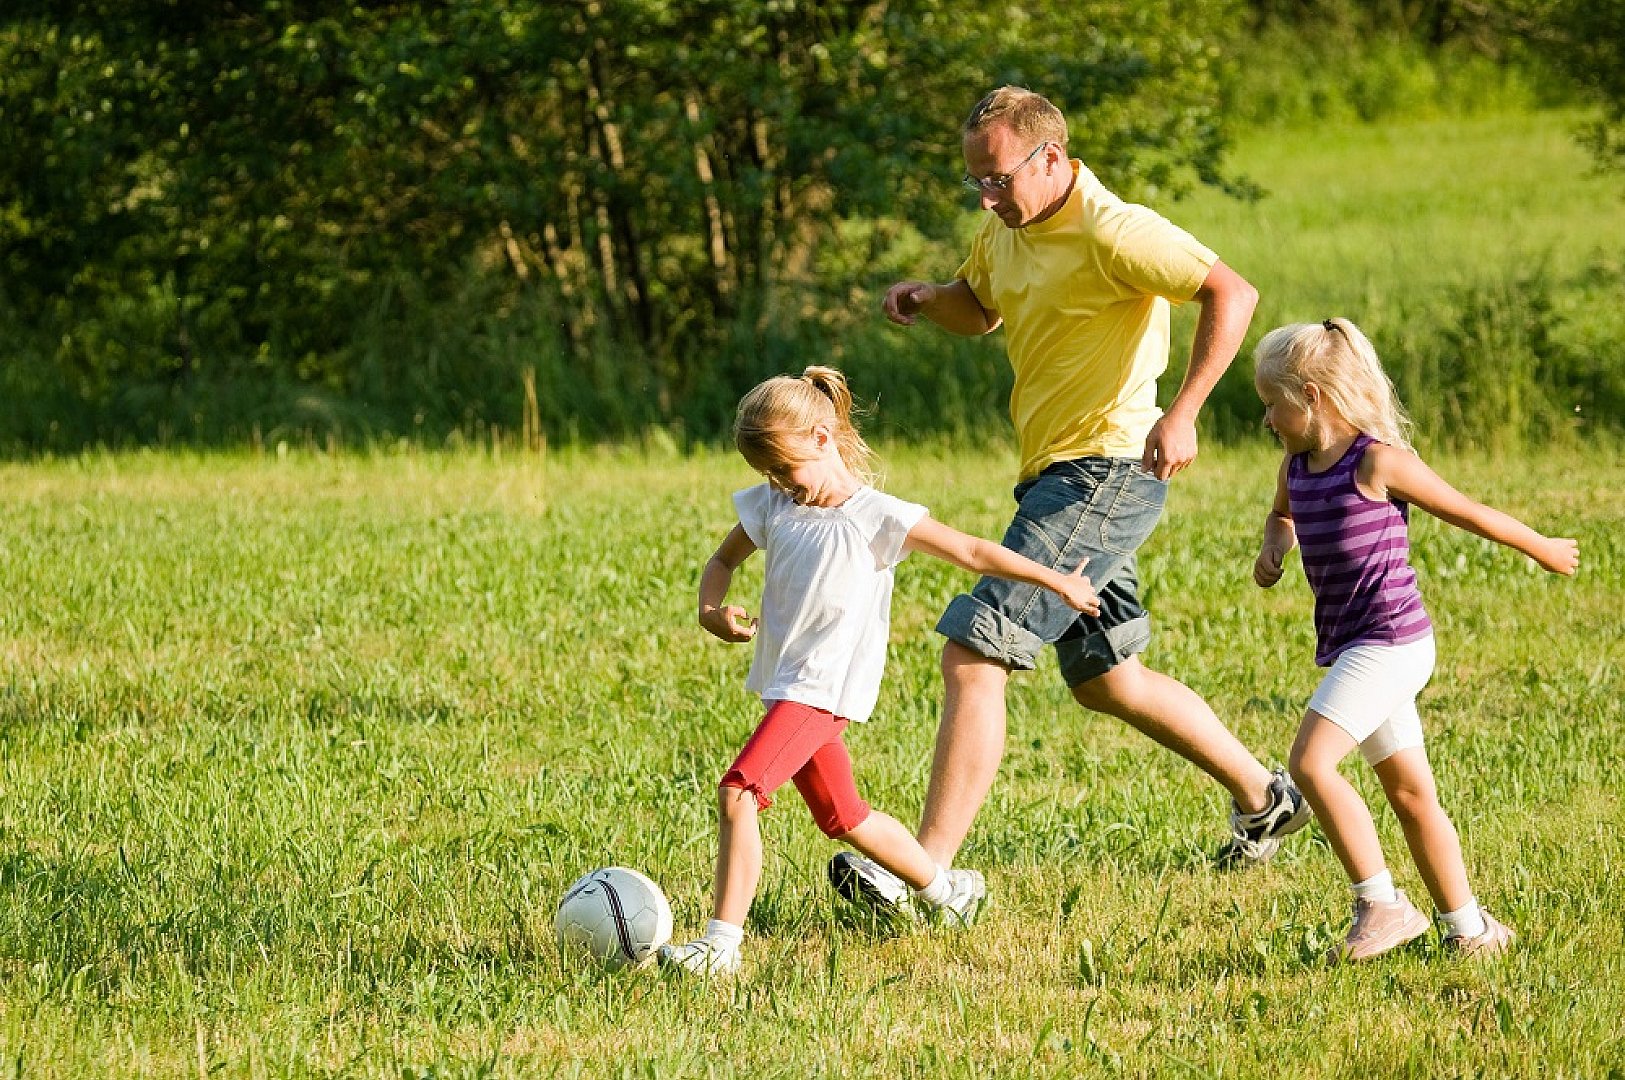 Активные игры. Дети на свежем воздухе. Активный образ жизни. Спортивные и подвижные игры. Спортивная семья на природе.